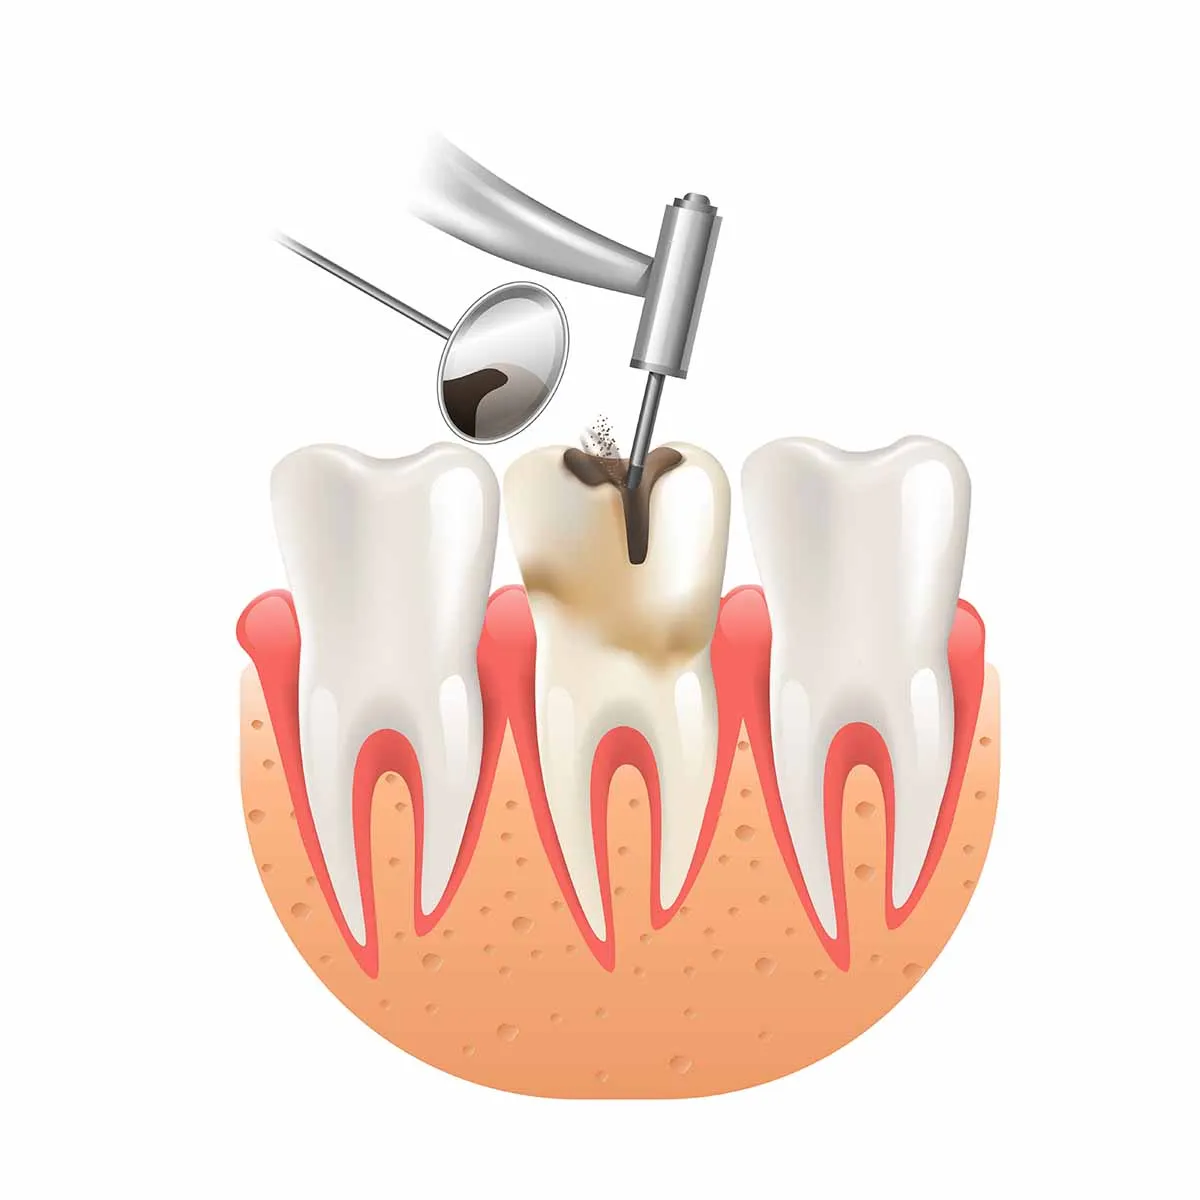 أنواع الحشوات المختلفة لعلاج تسوس الأسنان